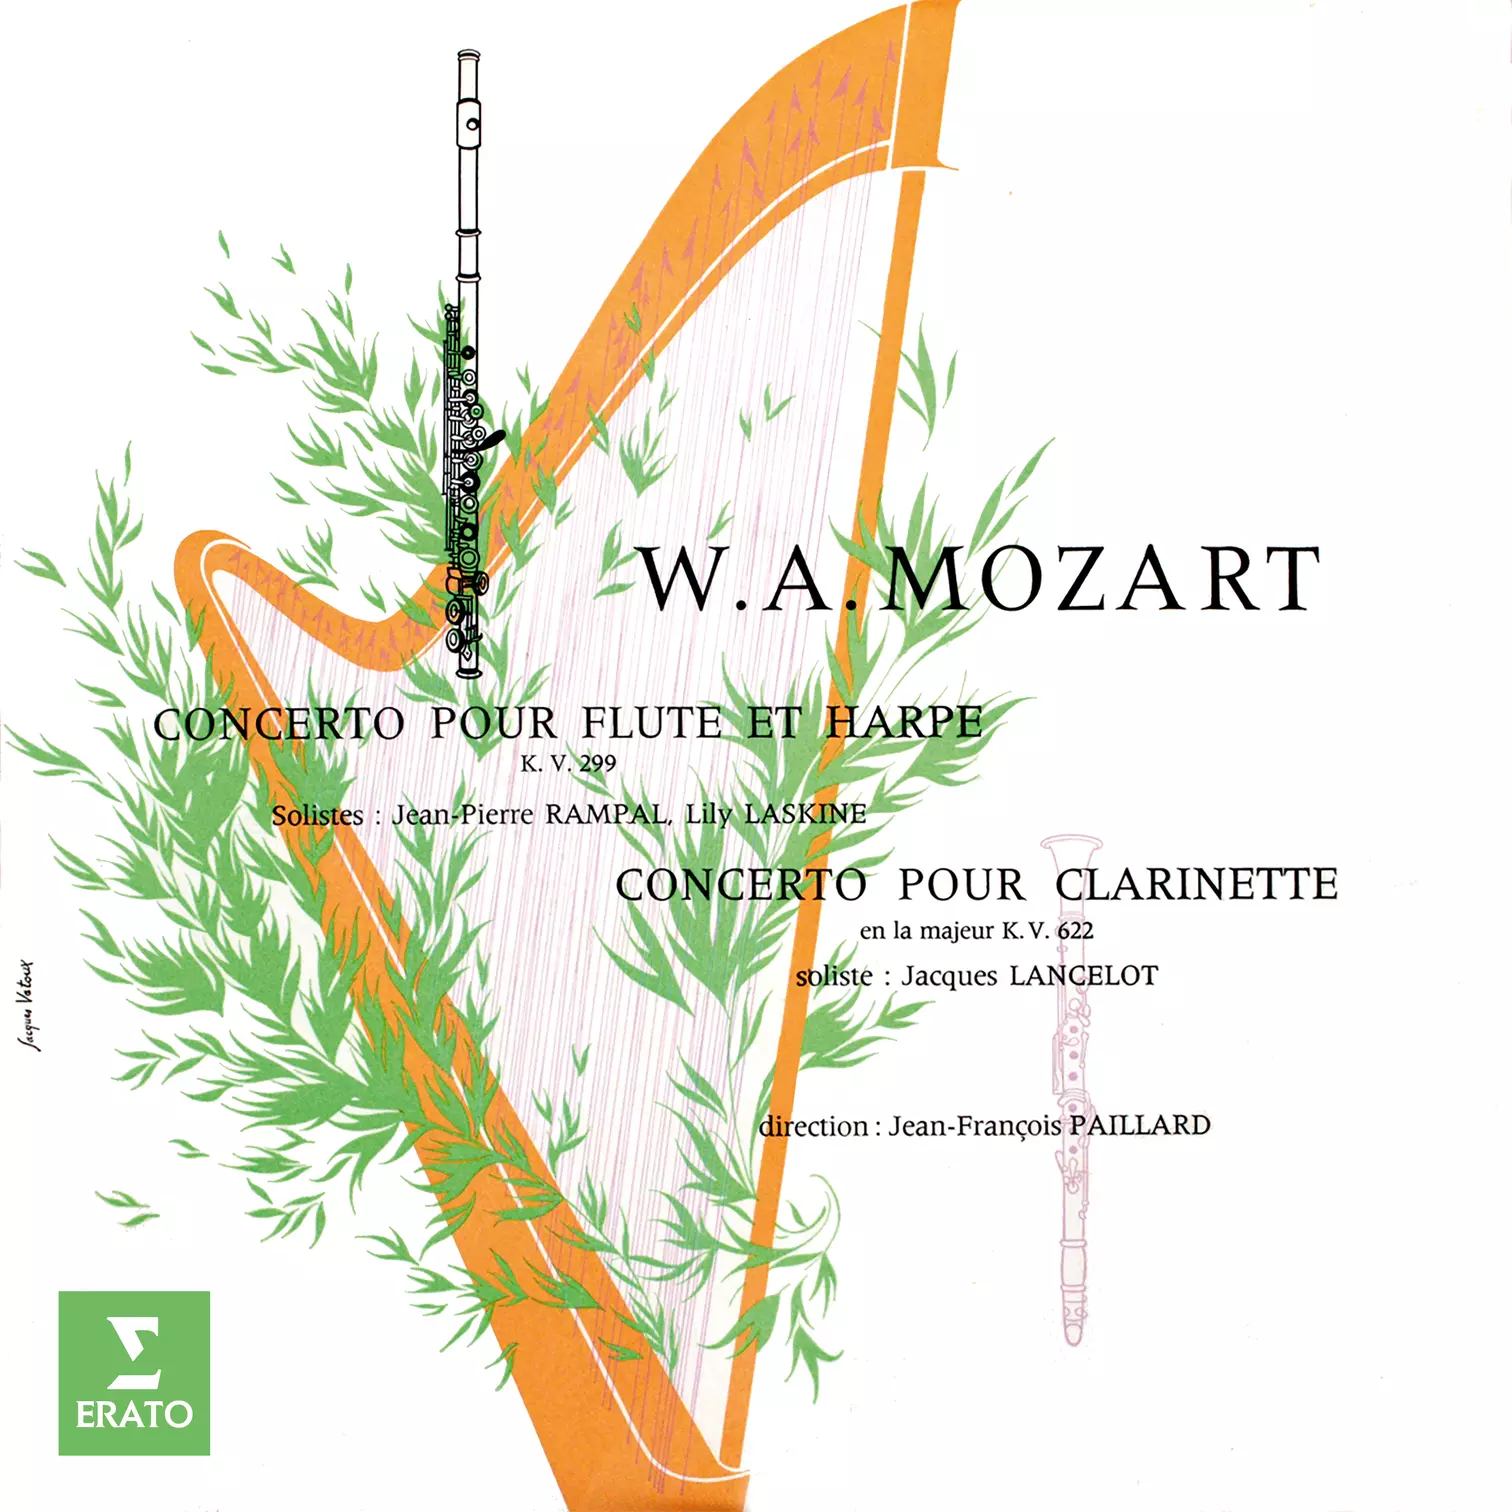 Mozart: Concerto pour flûte et harpe, K. 299 & Concerto pour clarinette, K. 622